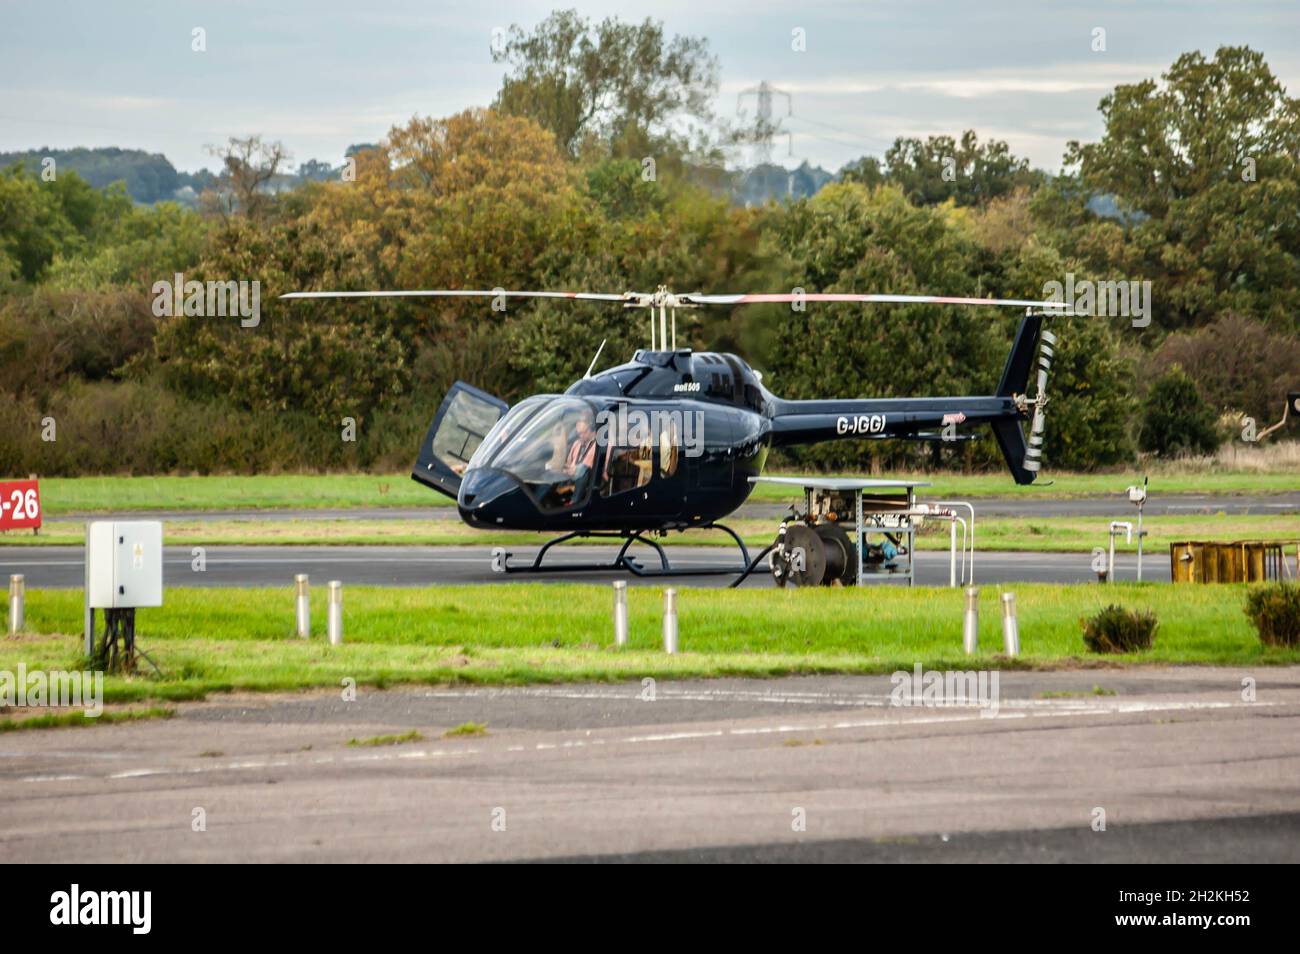 ELSTREE, LONDRES, ANGLETERRE- 17 octobre 2021 : hélicoptère léger Bell 505 Jet Ranger X photographié à l'aérodrome d'Elstree à Londres Banque D'Images